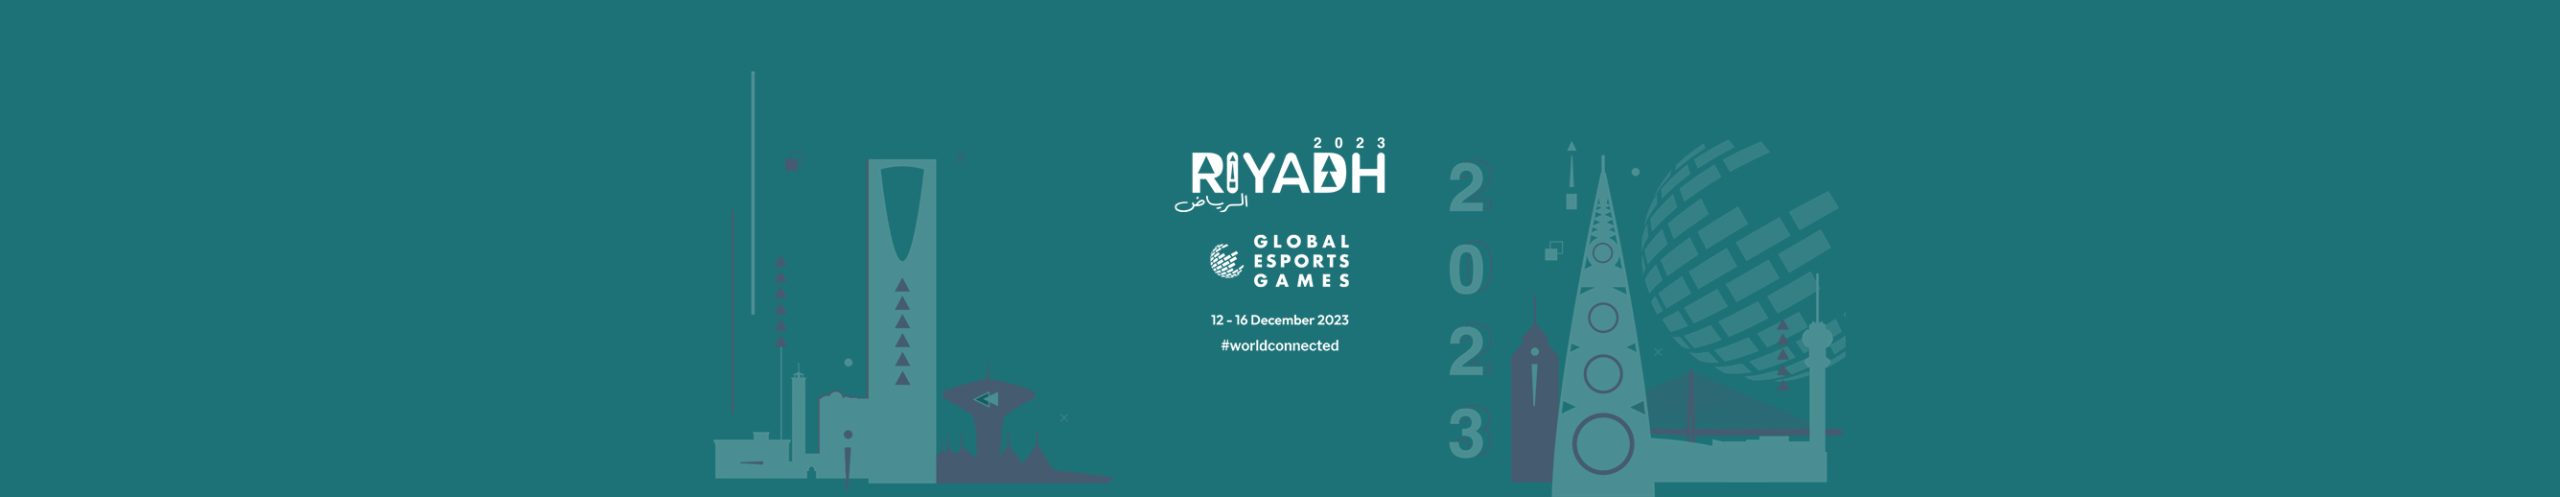 Global Esports Games – Riyadh 2023